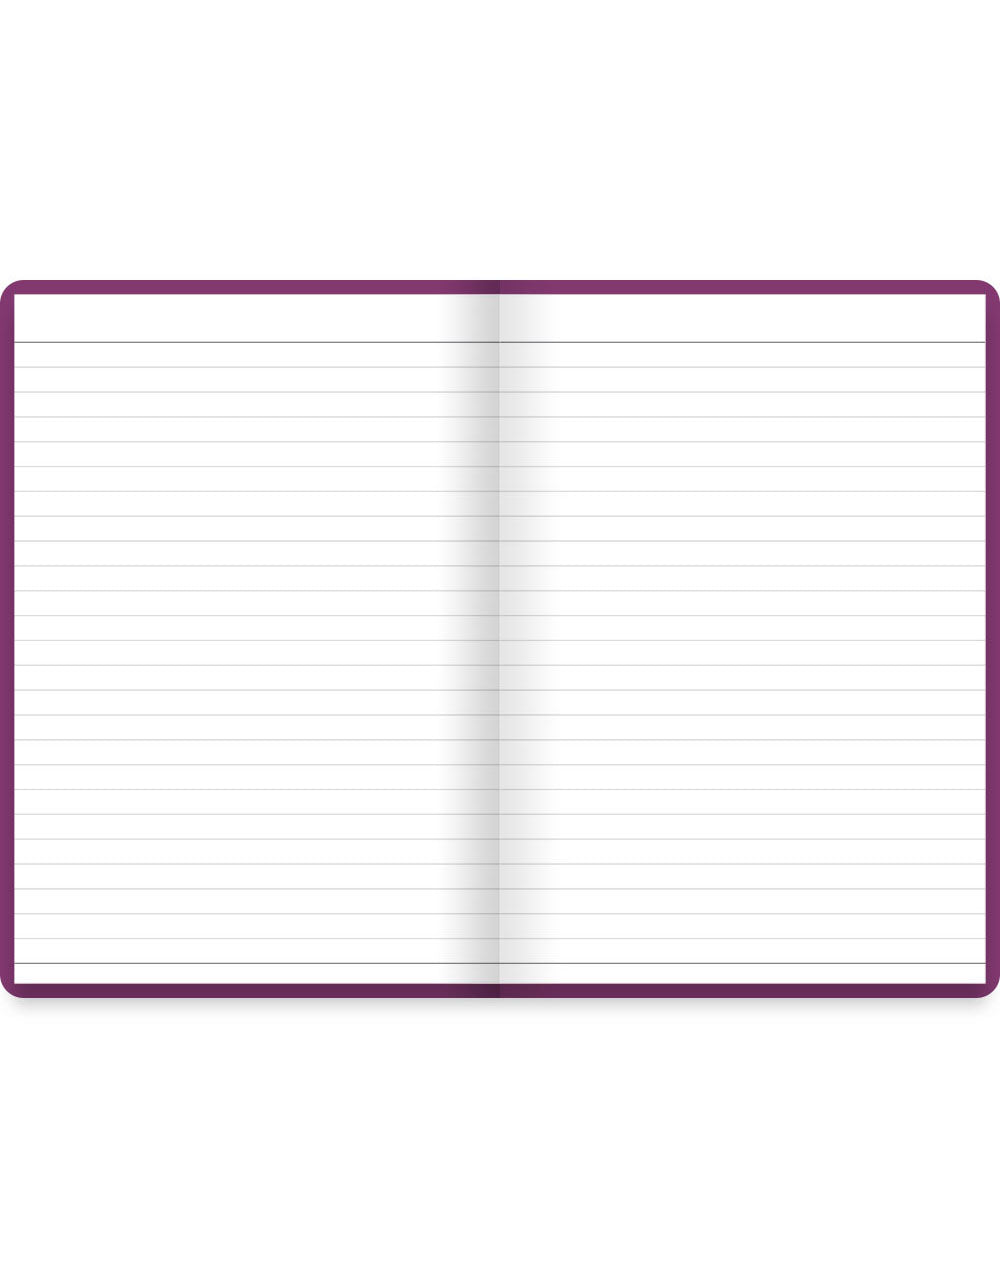 Dazzle A5 Address Book Purple#colour_purple